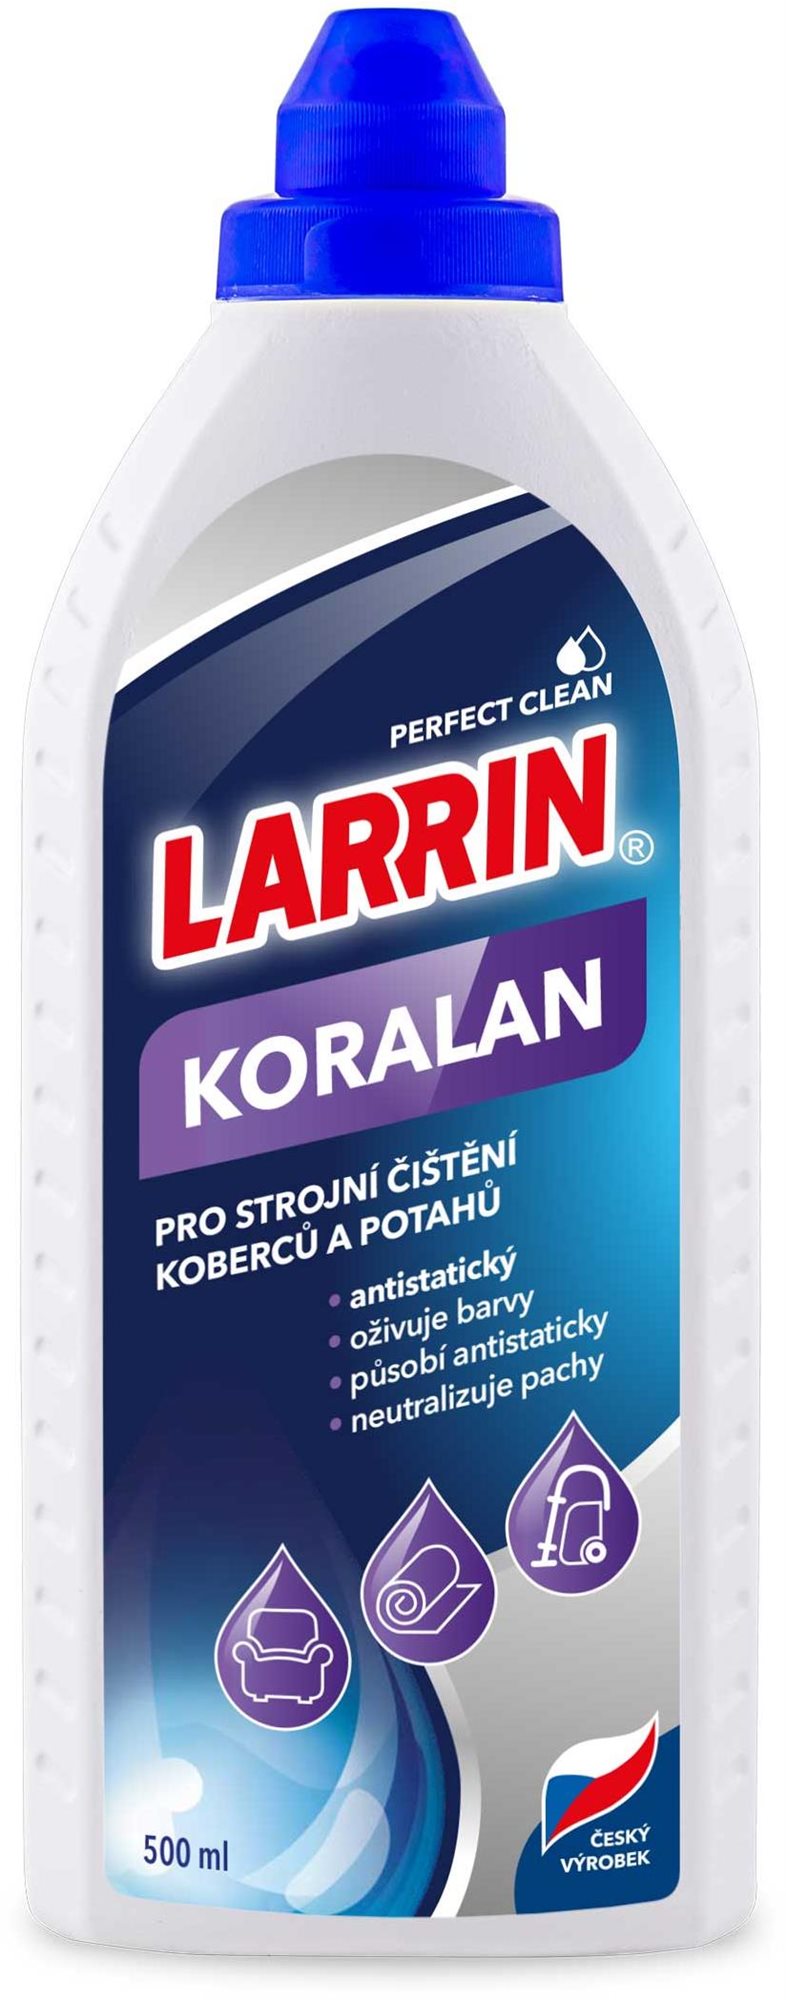 Szőnyegtisztító LARRIN Koralan gépi szőnyegtisztító 500 ml